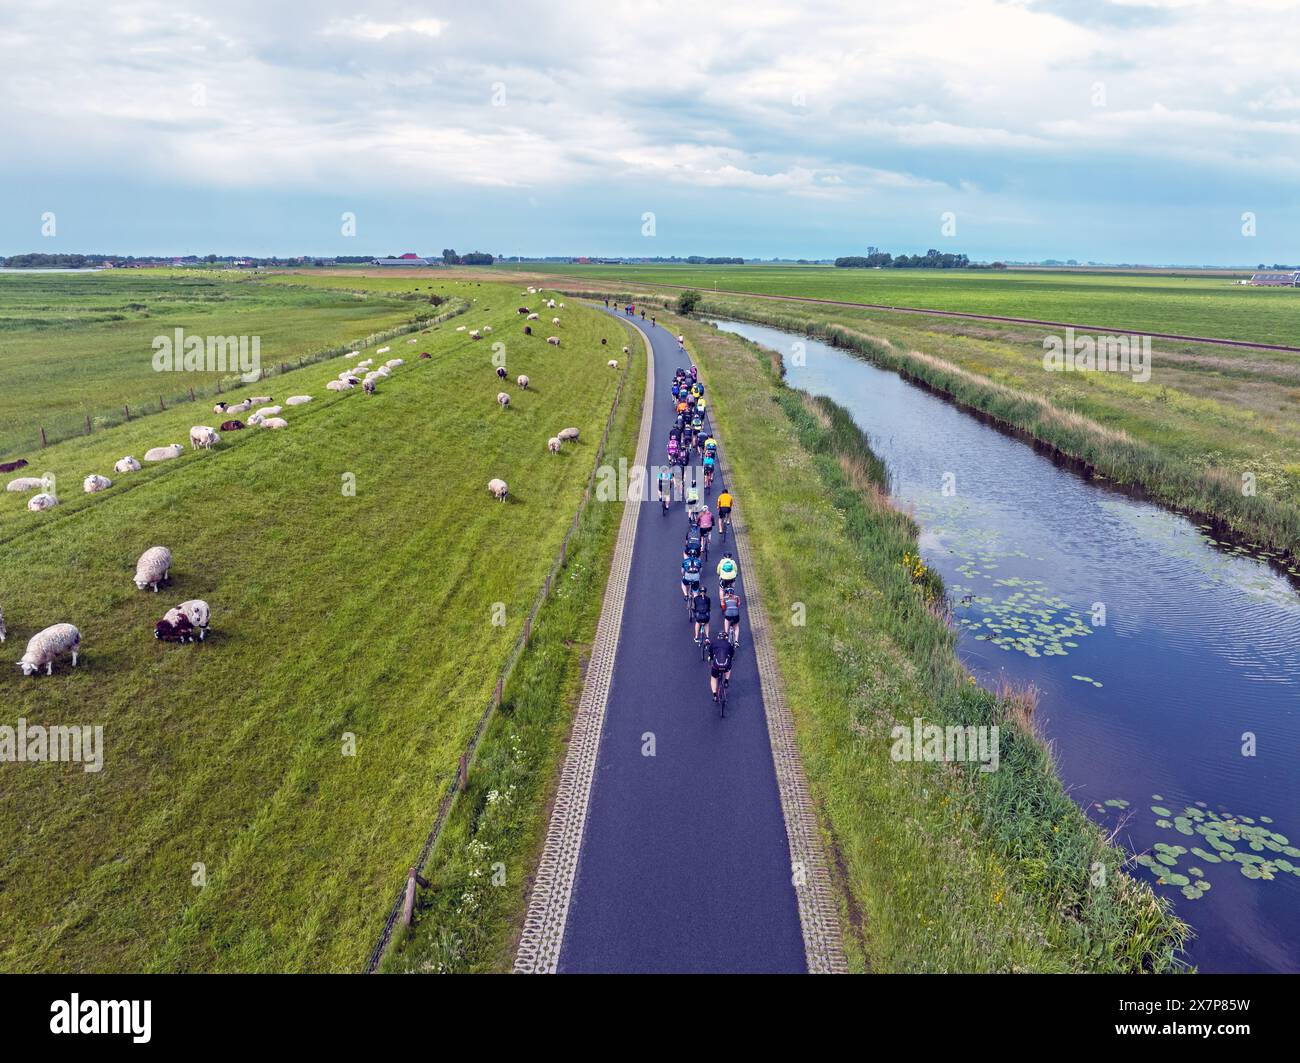 Luchtfoto van de jaarlijkse friese elfsteden fietstocht bij Molkwerum in Friesland Nederland. ANP/Hollandse Hoogte/Nataraj netherlands out - belgium out Stock Photo